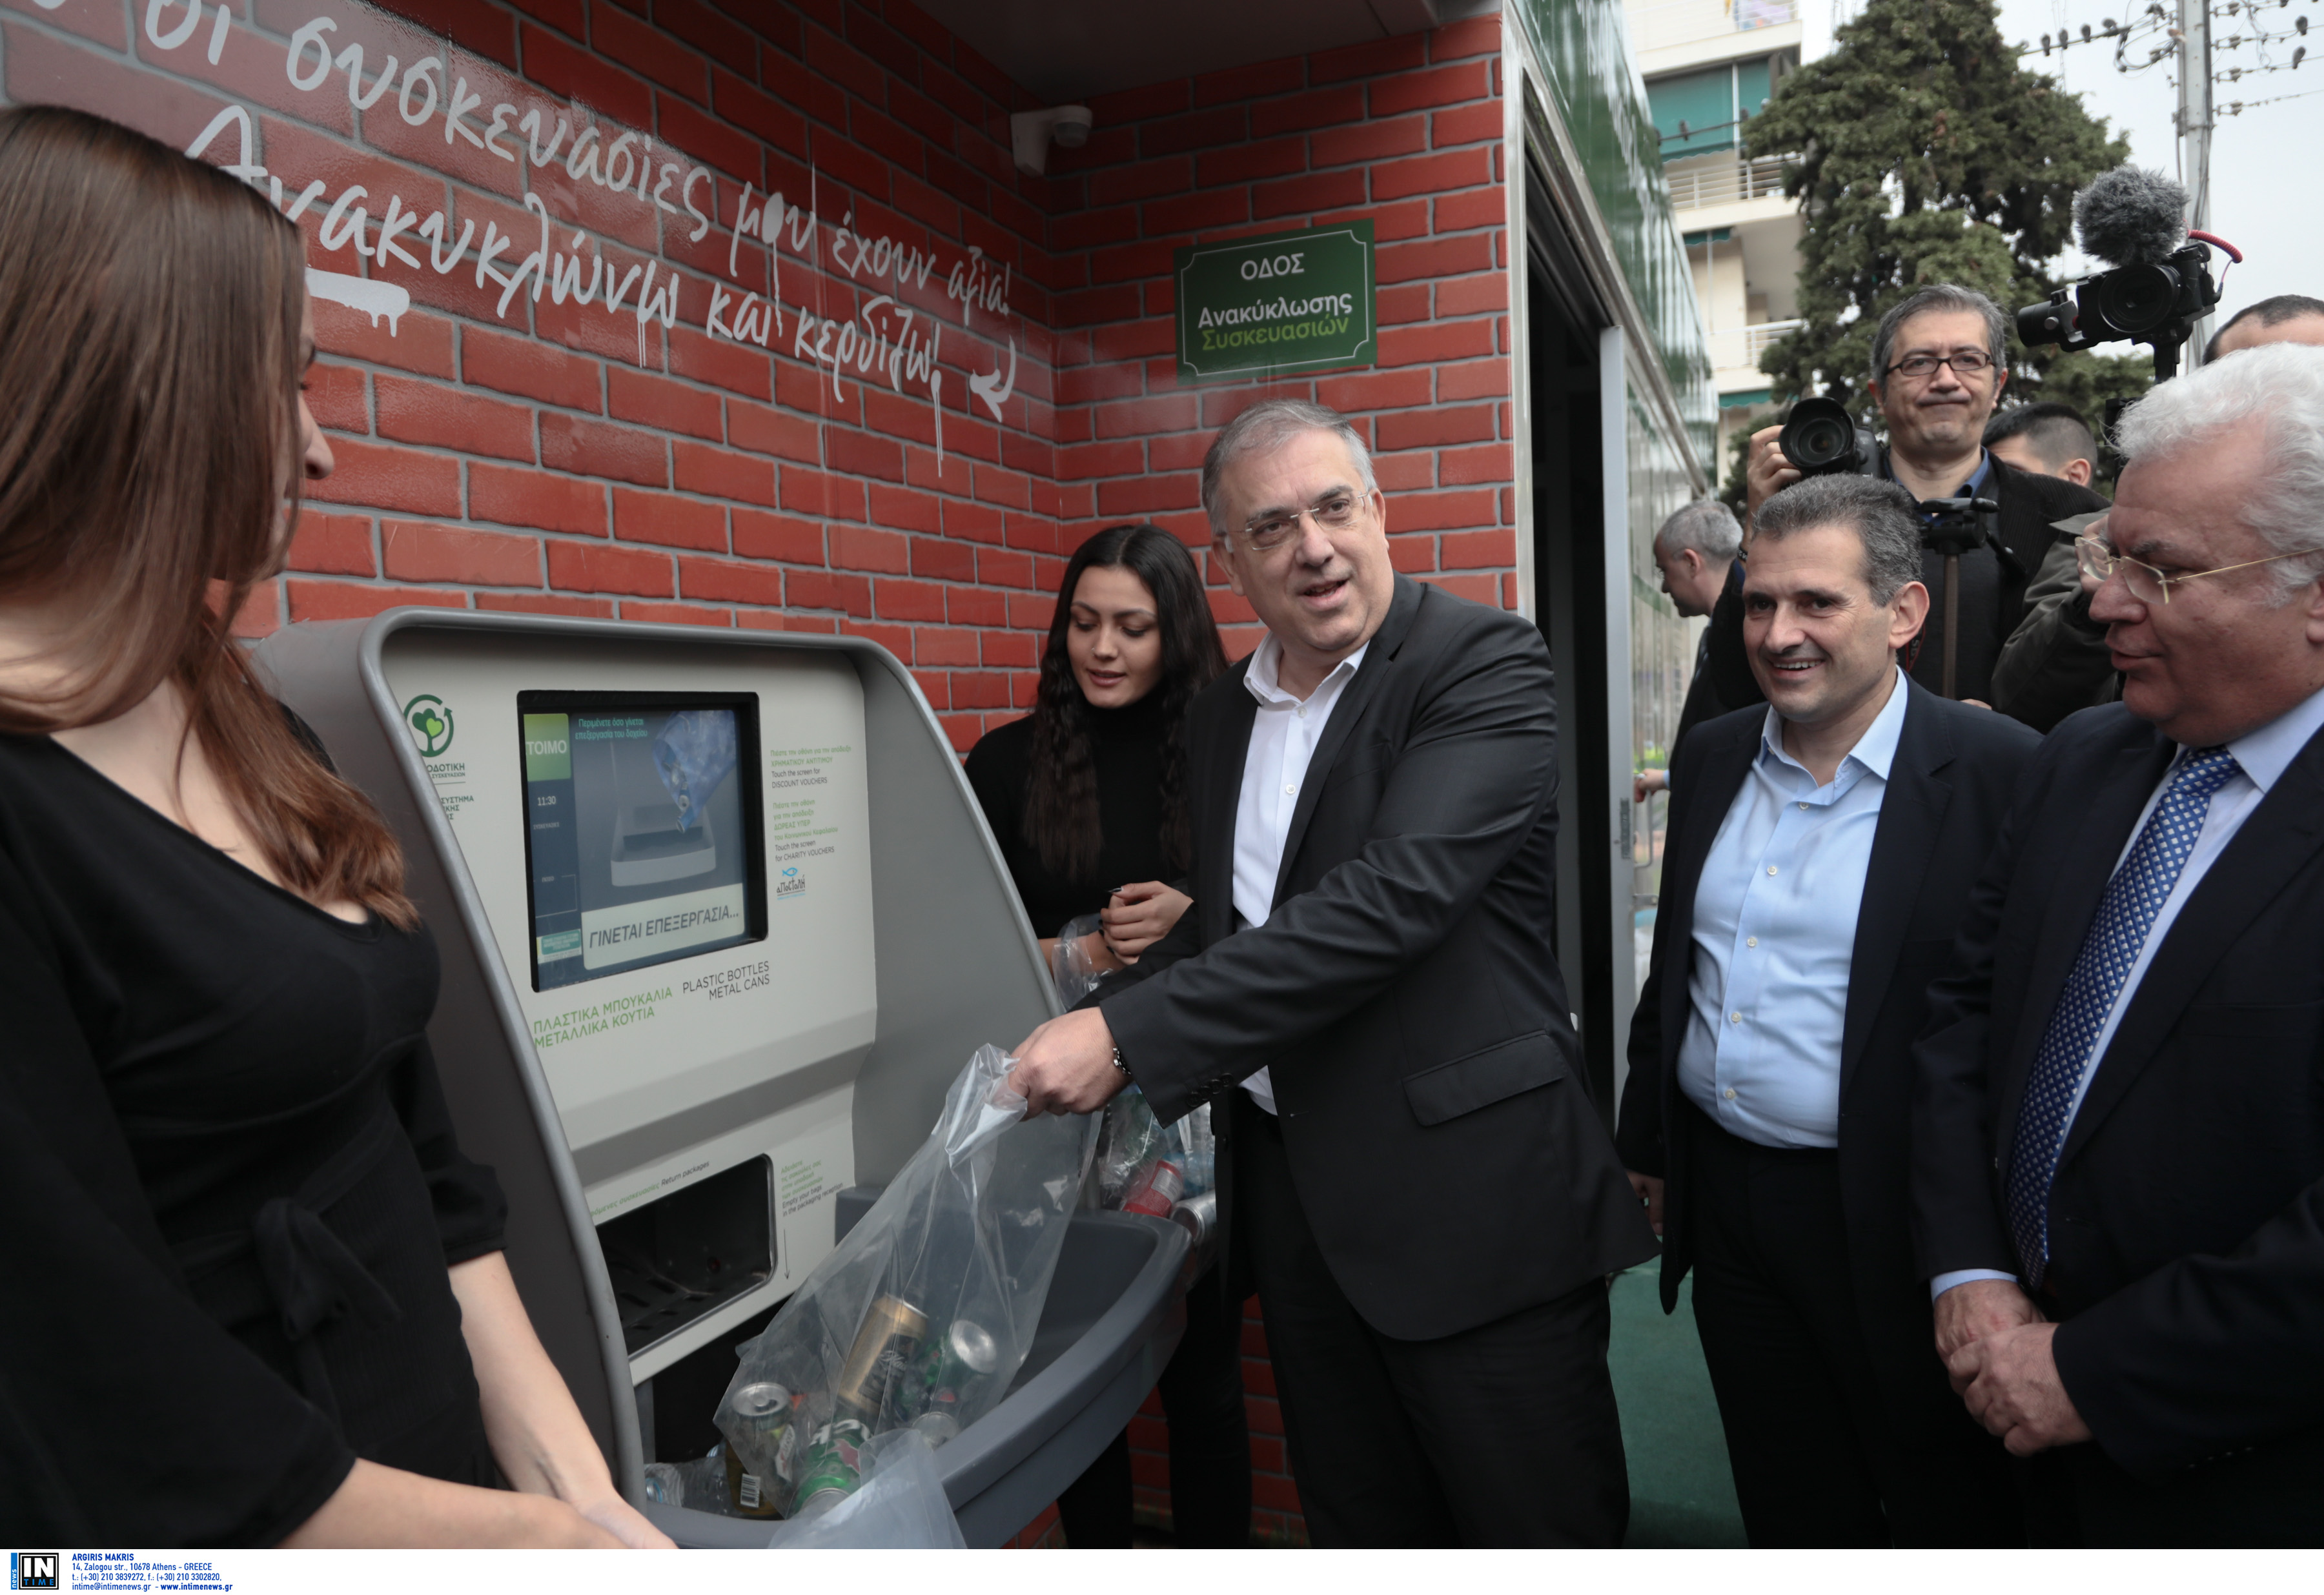 Θεοδωρικάκος: Εγκαινίασε το πρώτο «σπιτάκι της ανταποδοτικής ανακύκλωσης» στην Καλλιθέα